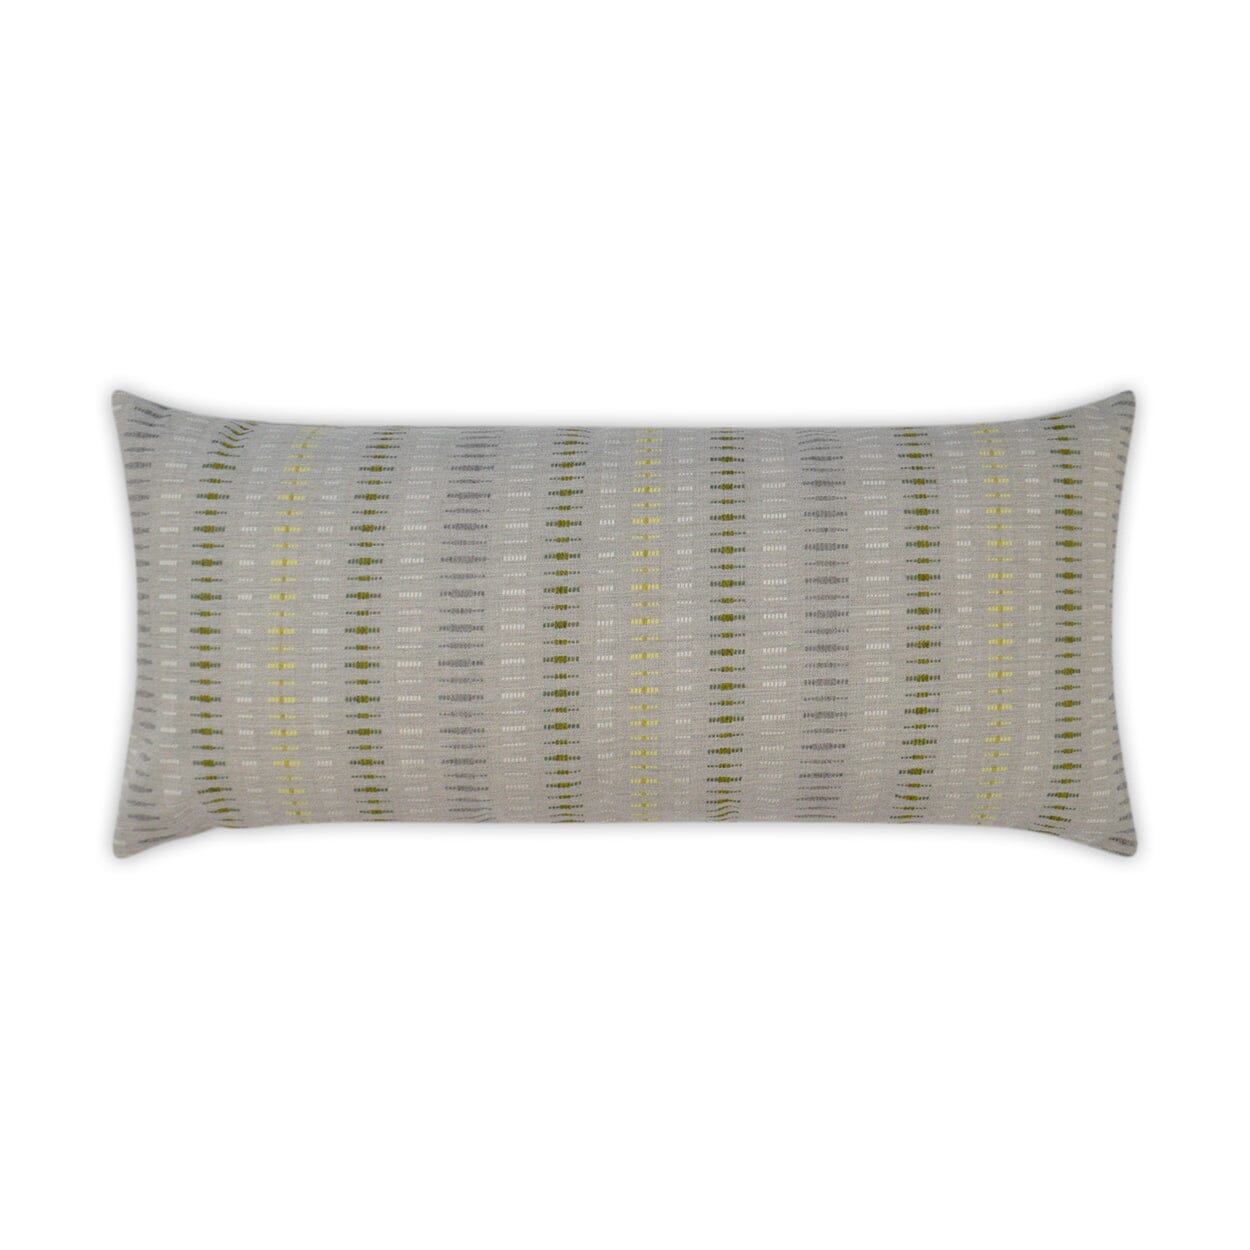 D.V. Kap 12" x 24" Outdoor Lumbar Pillow | Esti Citronelle Pillows D.V Kap Outdoor